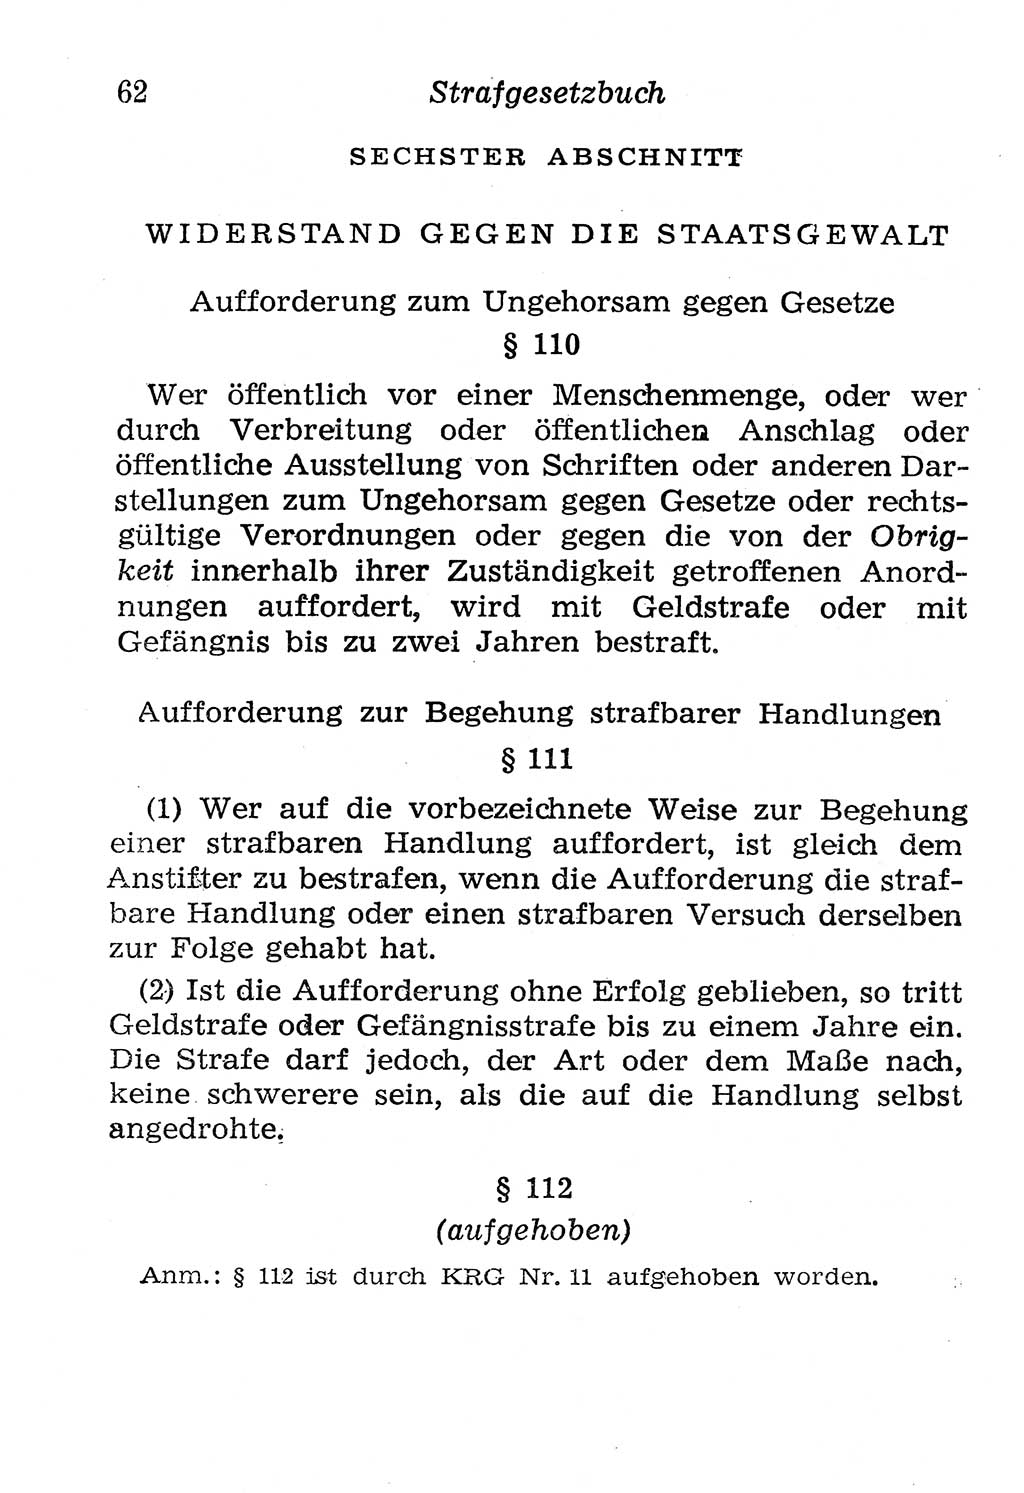 Strafgesetzbuch (StGB) und andere Strafgesetze [Deutsche Demokratische Republik (DDR)] 1958, Seite 62 (StGB Strafges. DDR 1958, S. 62)